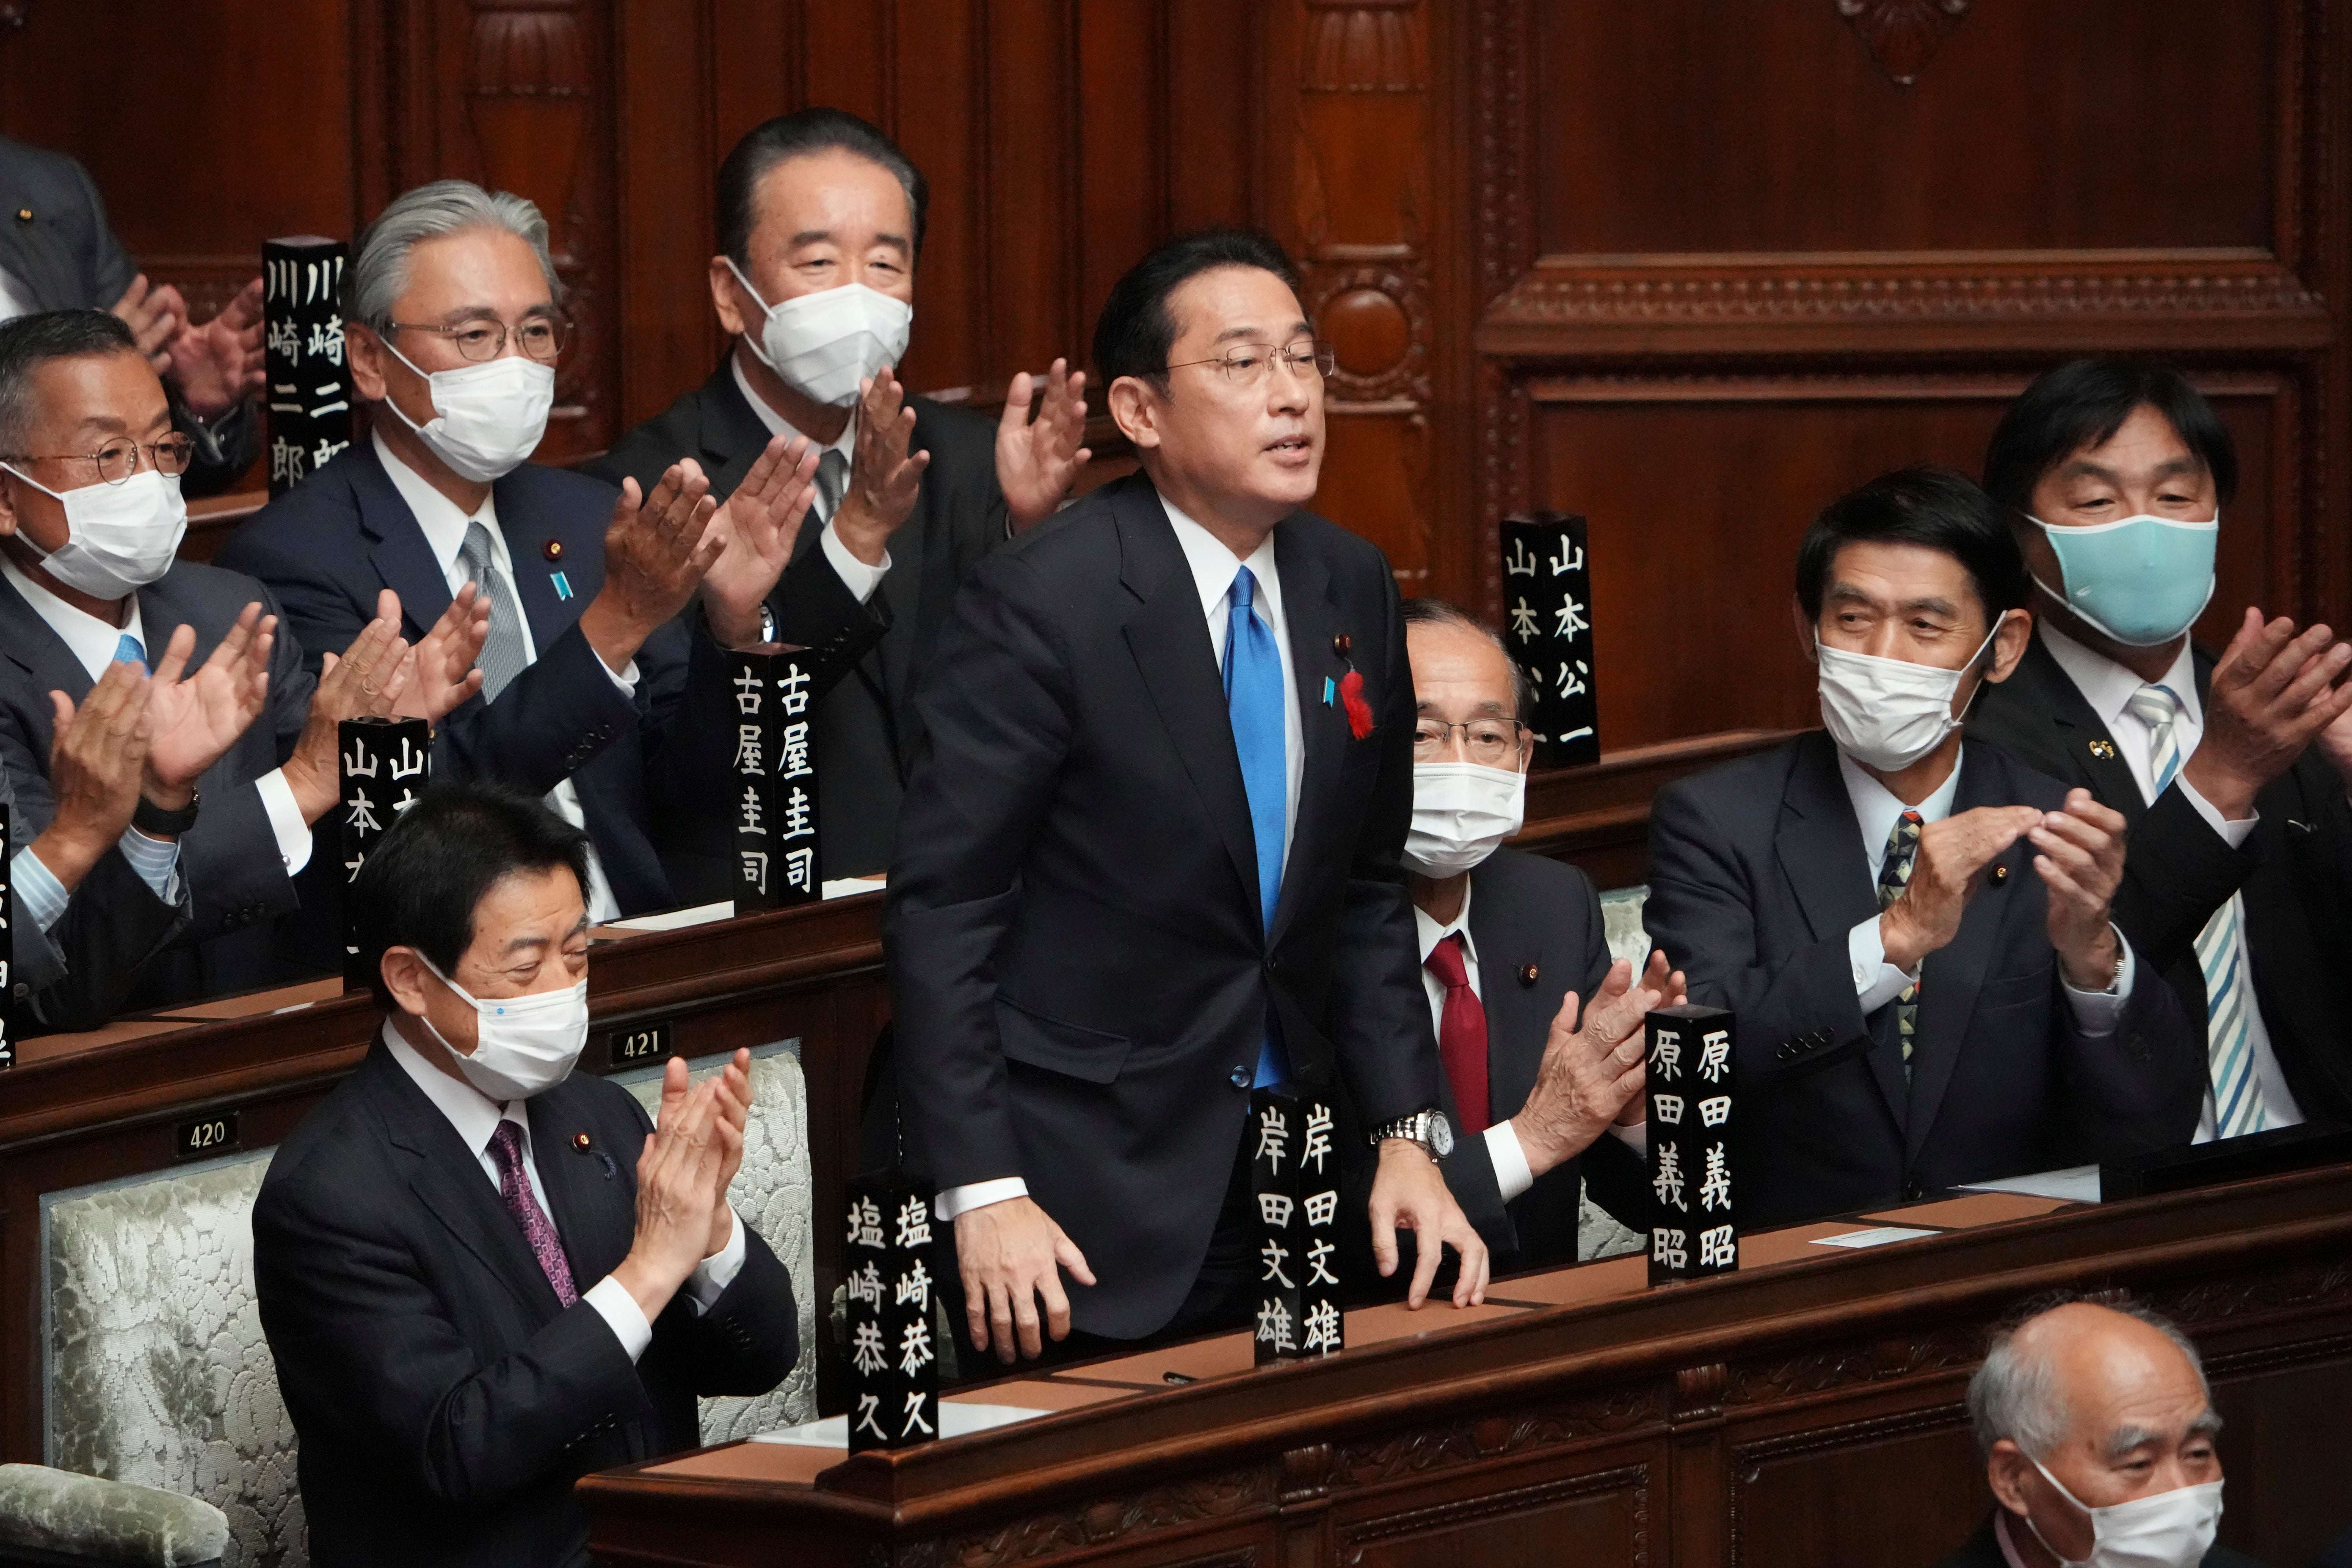 Fumio Kishida won the governing party’s leadership election last week